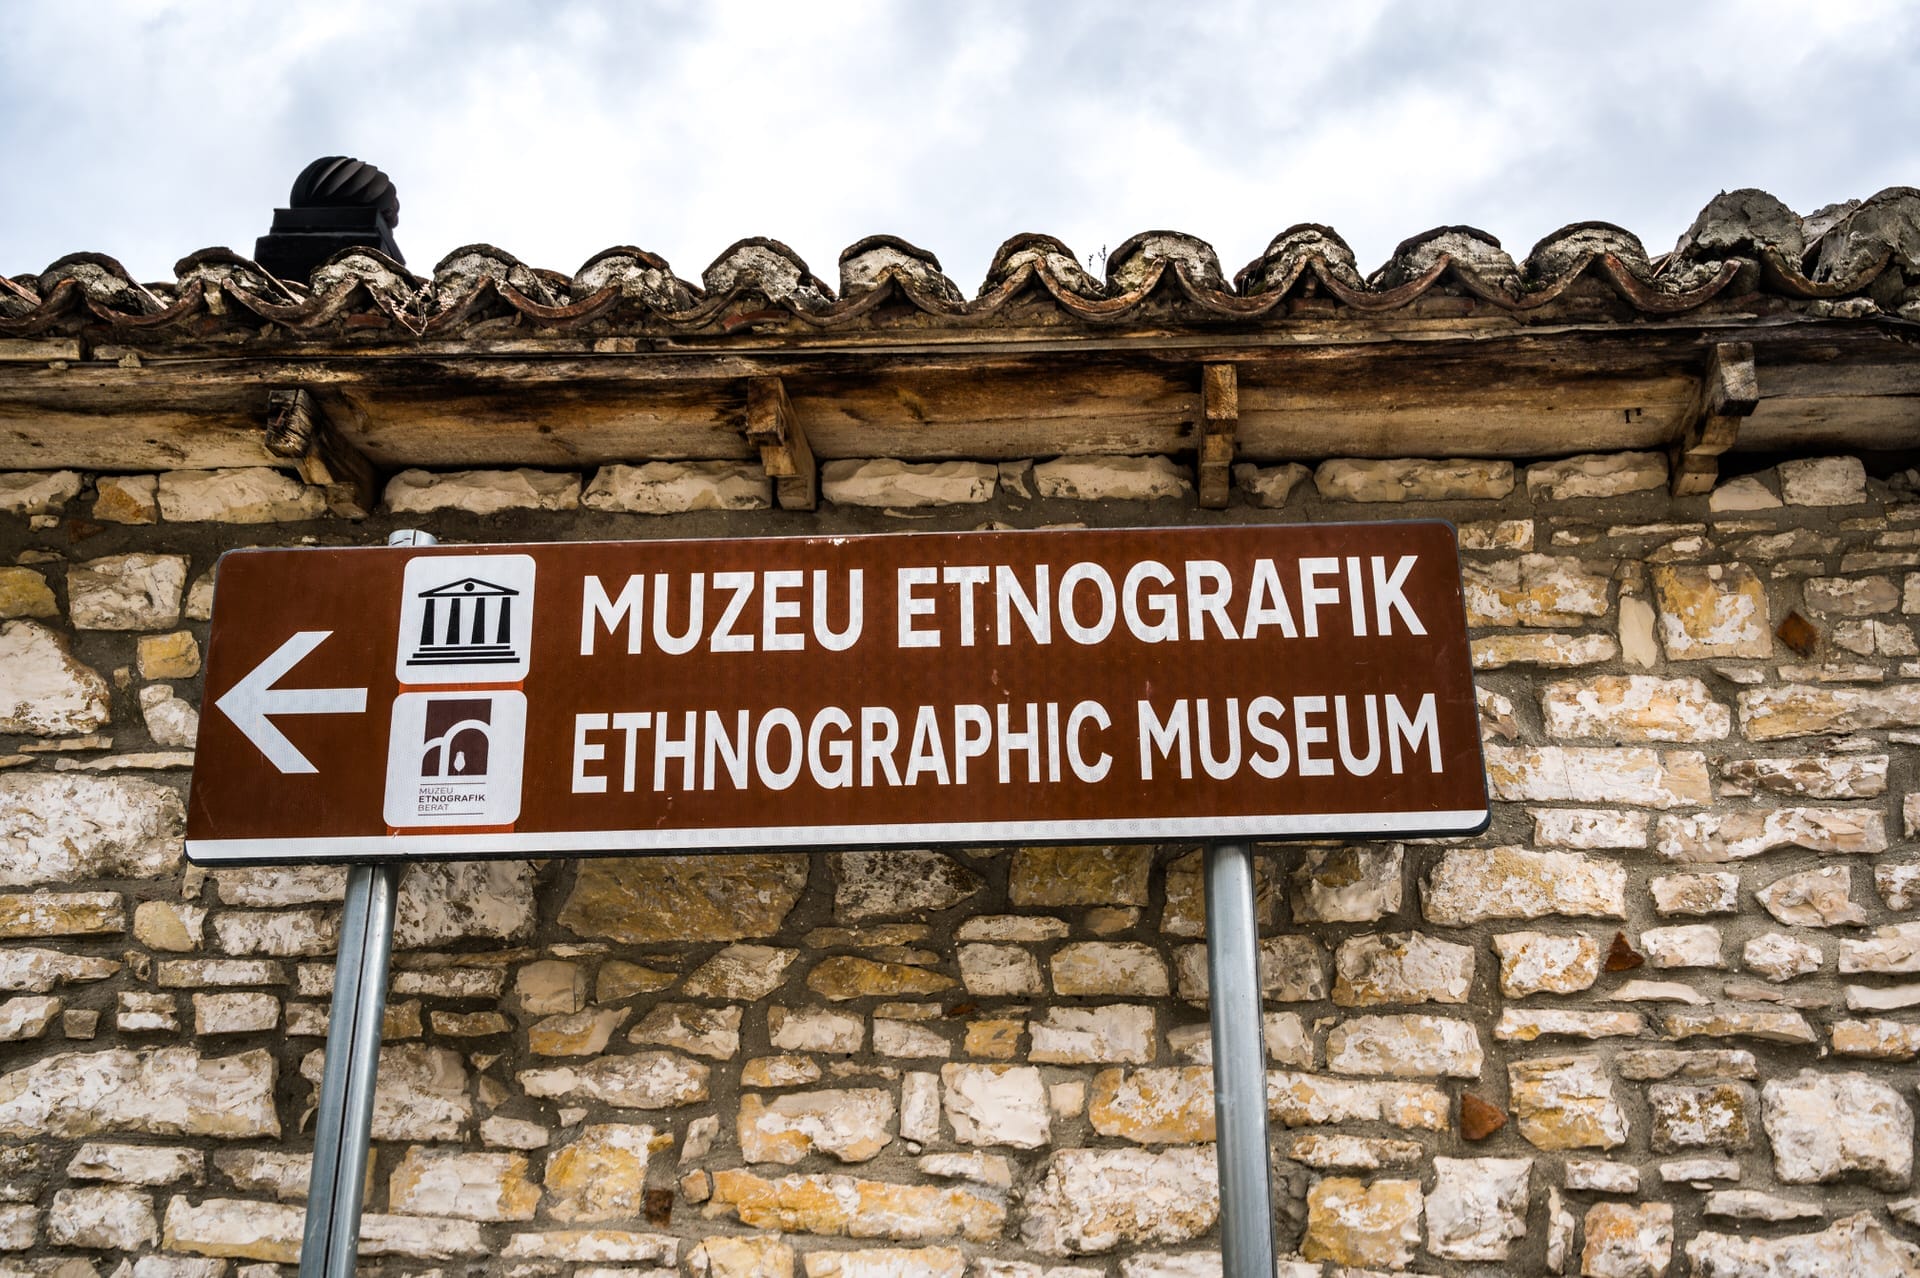 Berat ethnographic museum